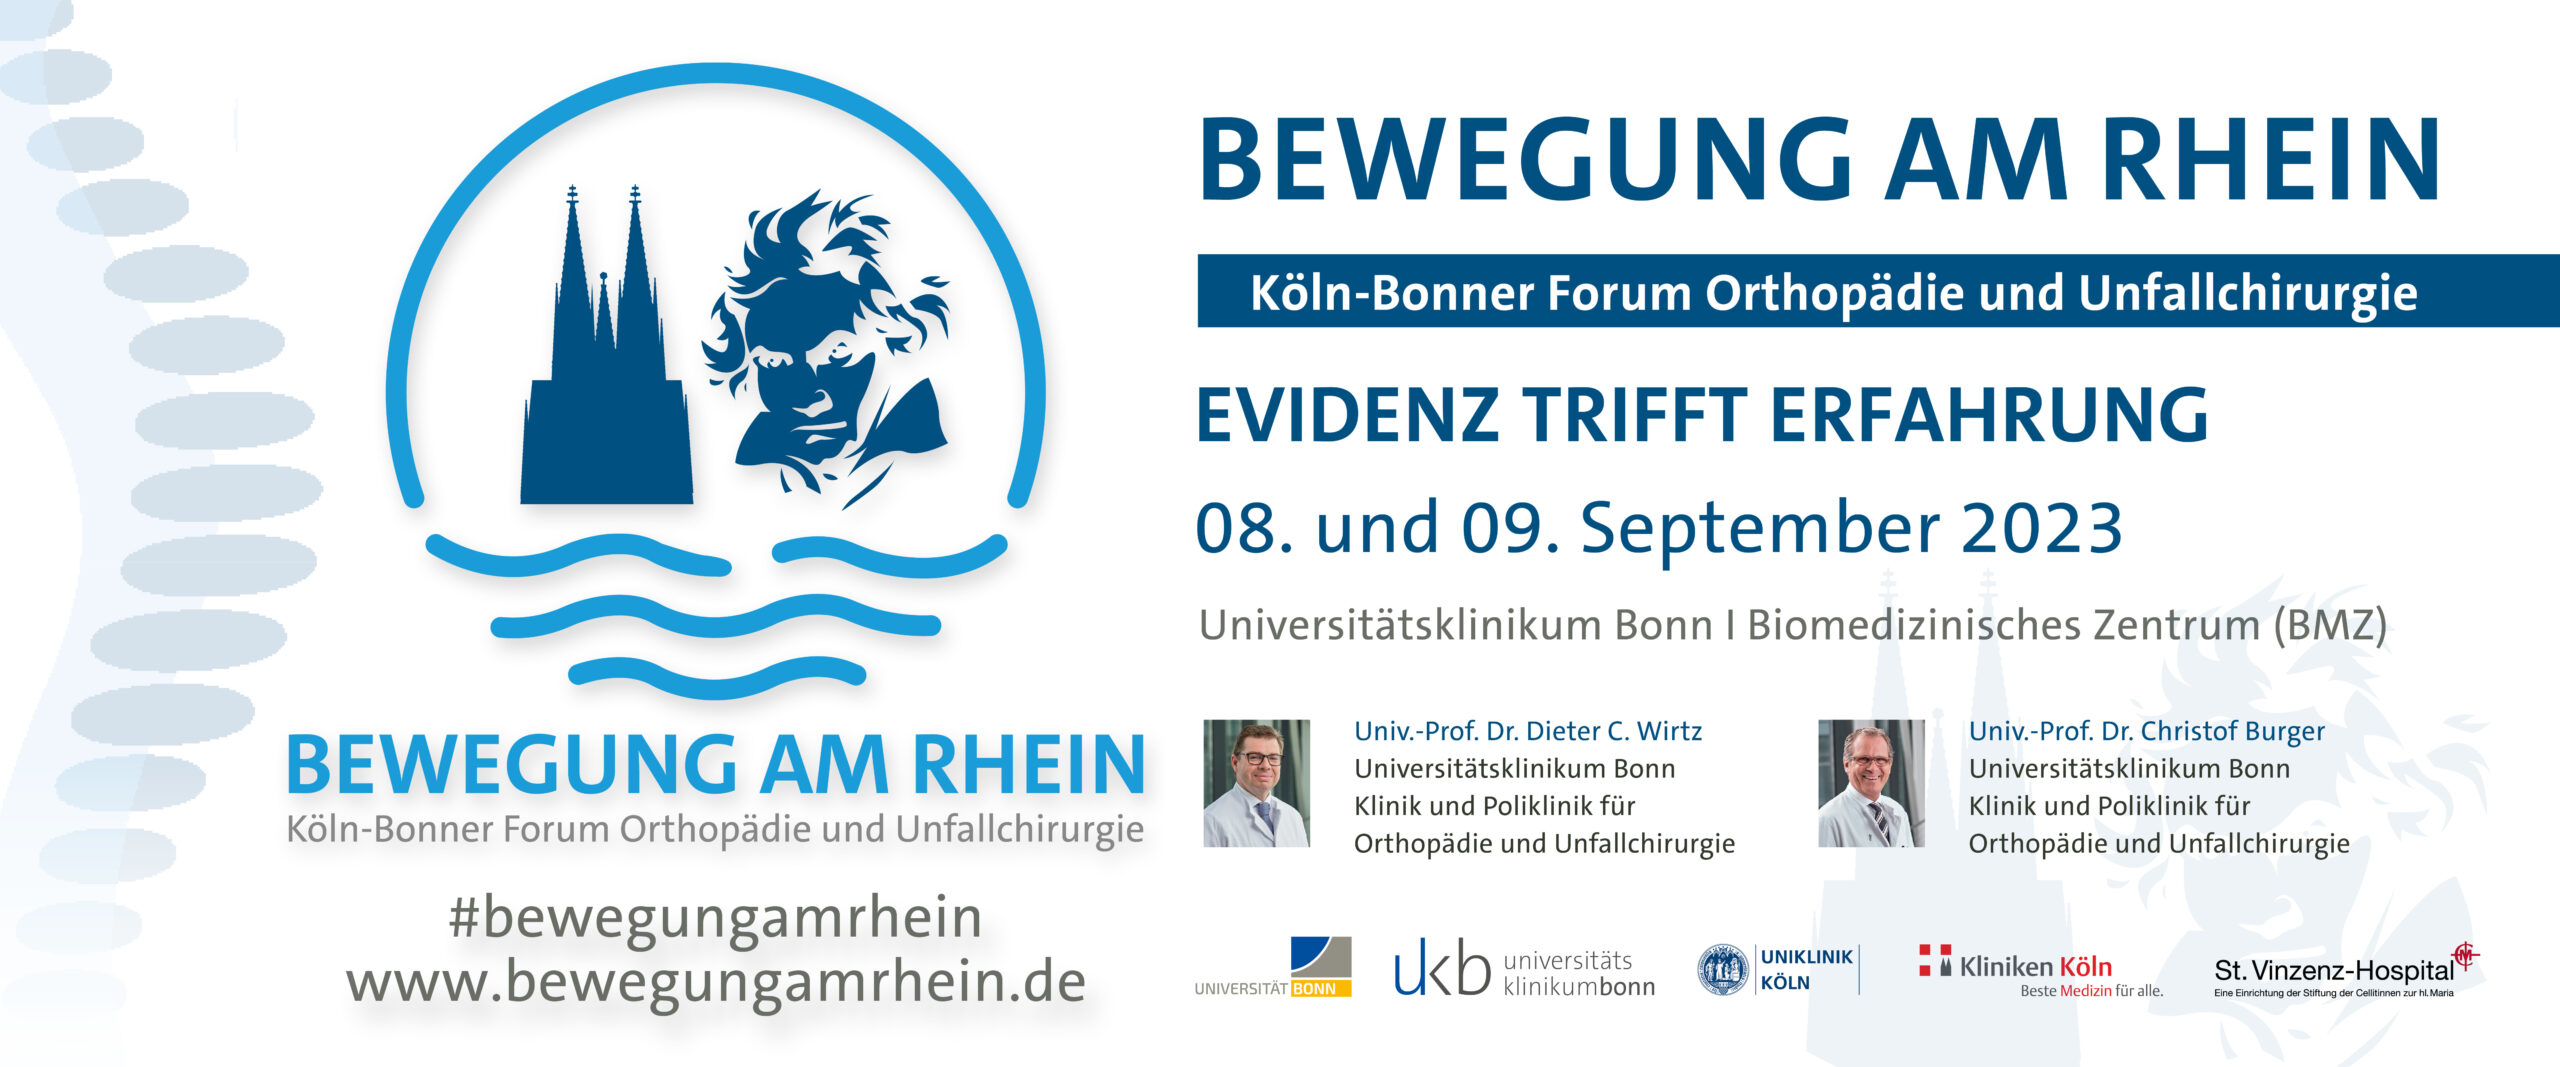 BEWEGUNG AM RHEIN – Köln-Bonner Forum Orthopädie und Unfallchirurgie EVIDENZ TRIFFT ERFAHRUNG